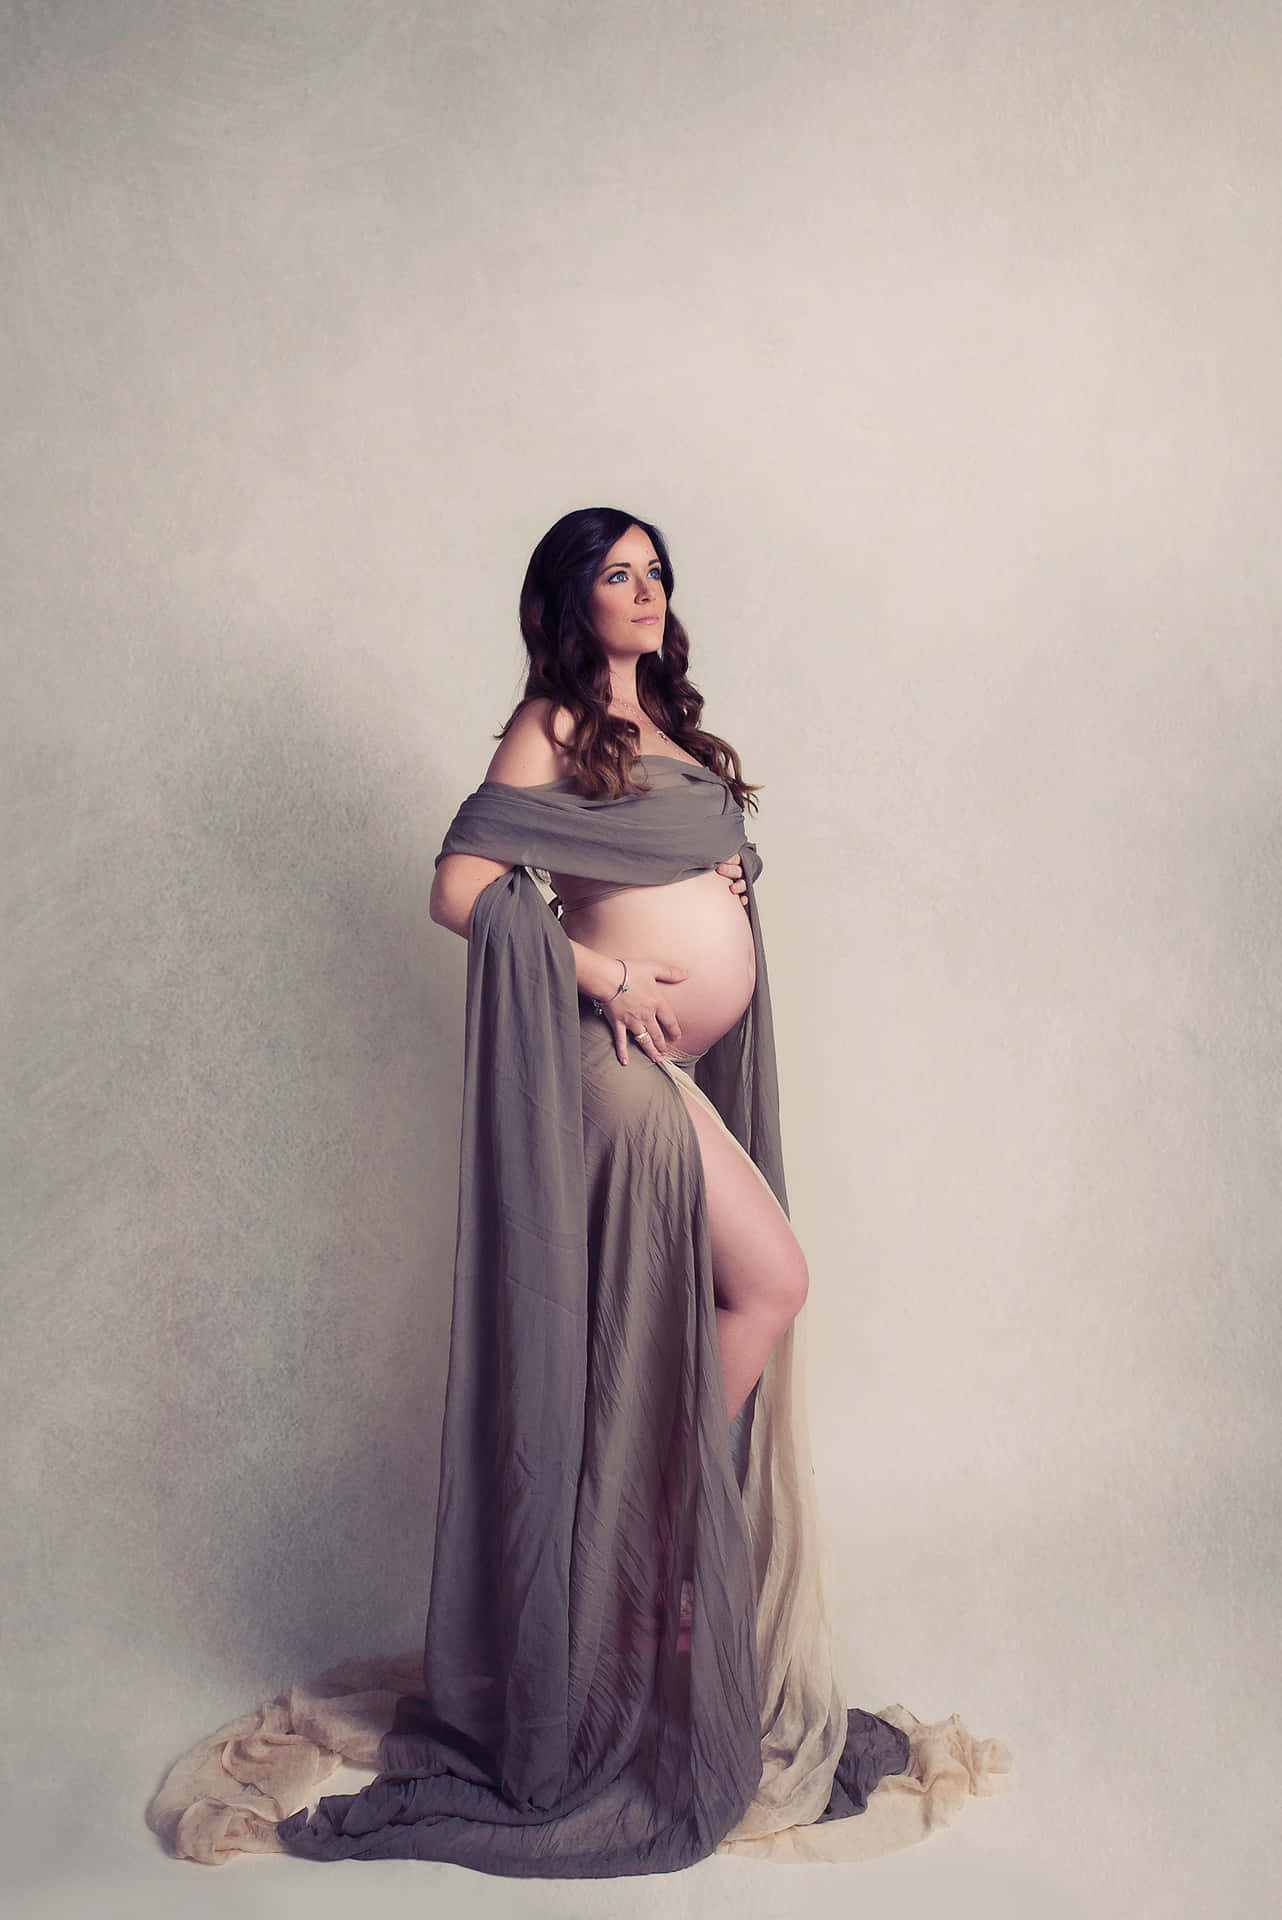 Pregnant Woman Maternity Portrait Picture